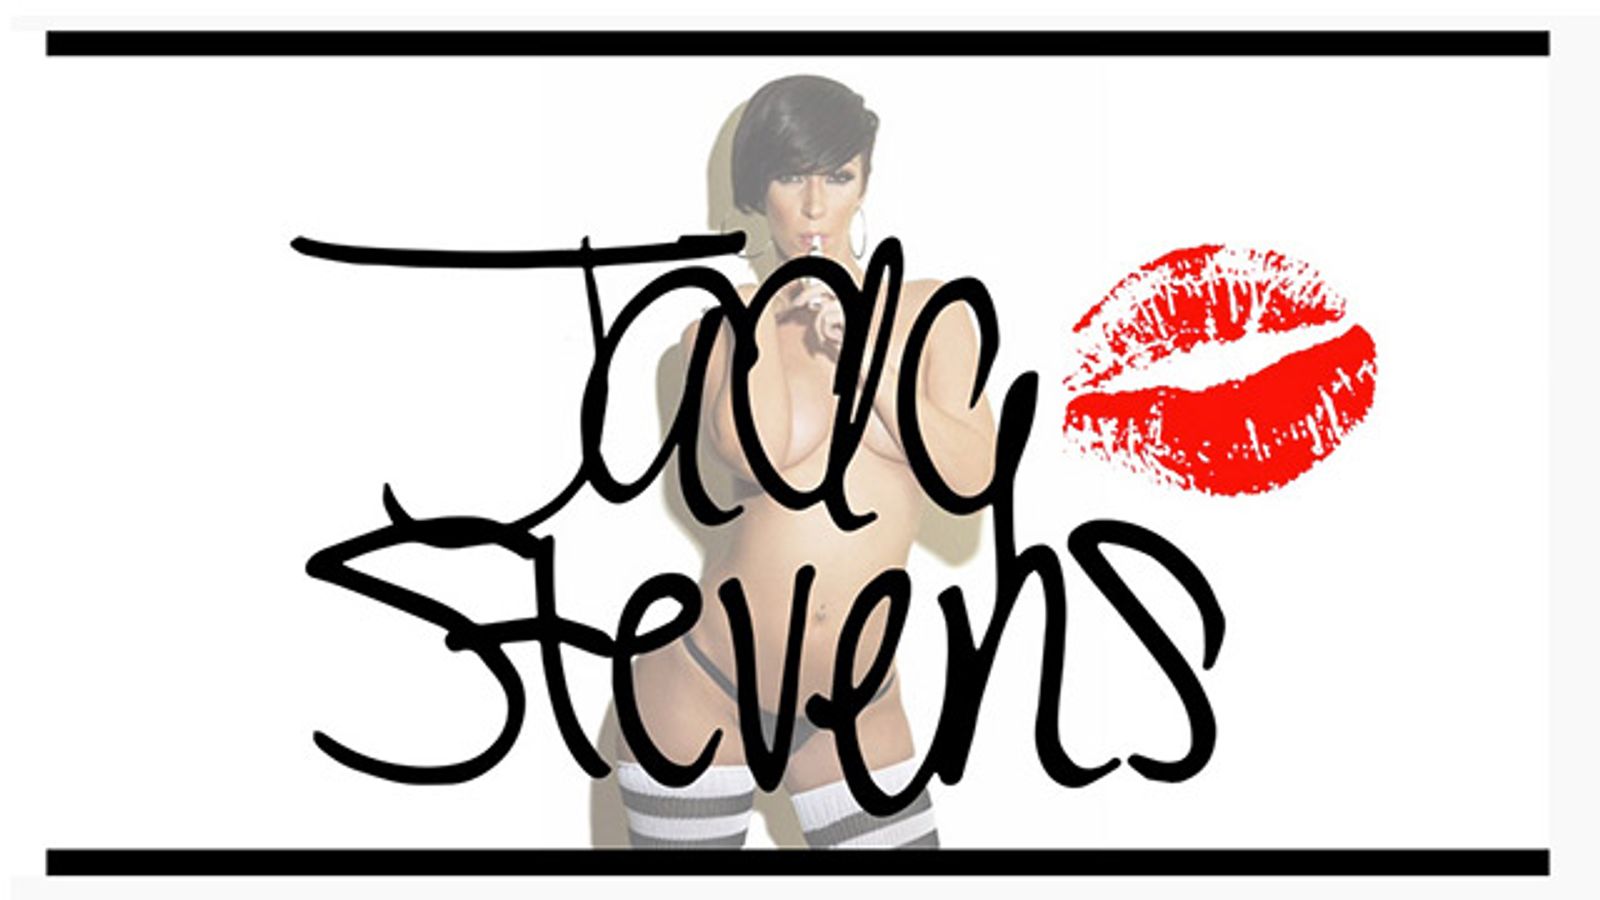 Jada Stevens Gets Her Own Vape